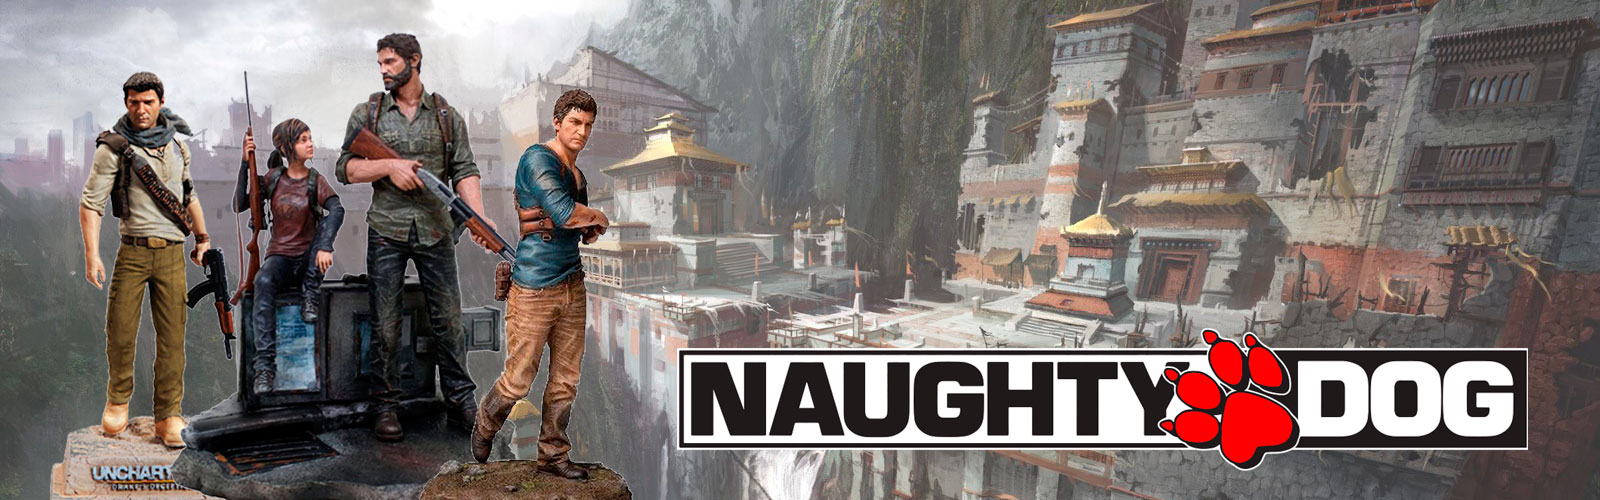 3 edições de colecionador fantásticas da Naughty Dog! Cover